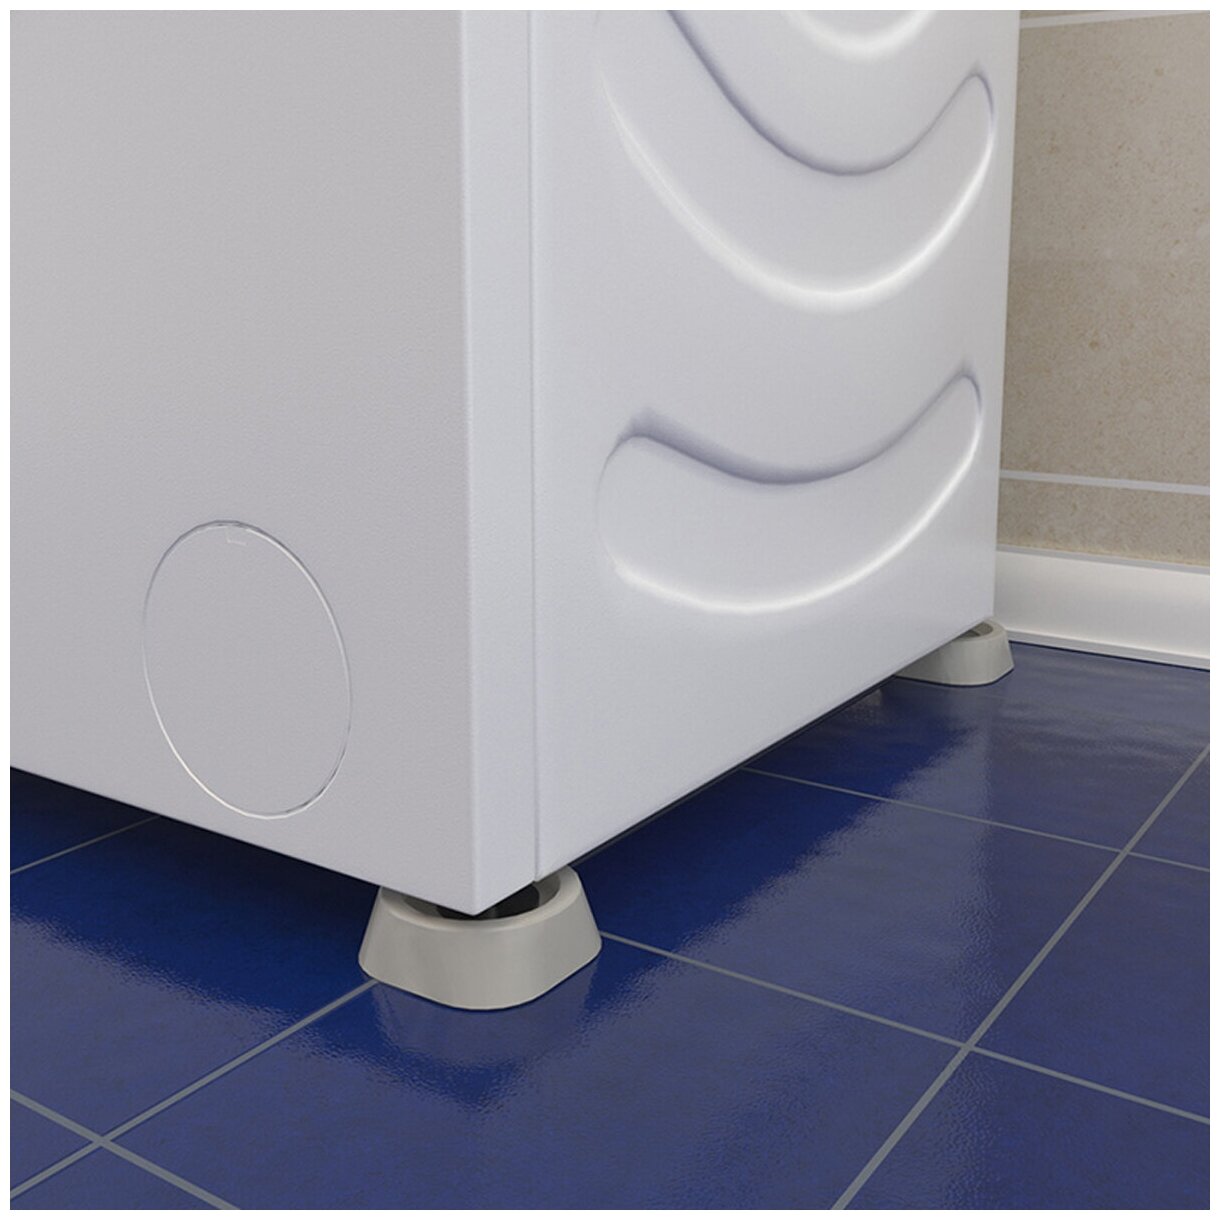 Рельефные антивибрационные подставки для холодильников стиральных машин (4 )